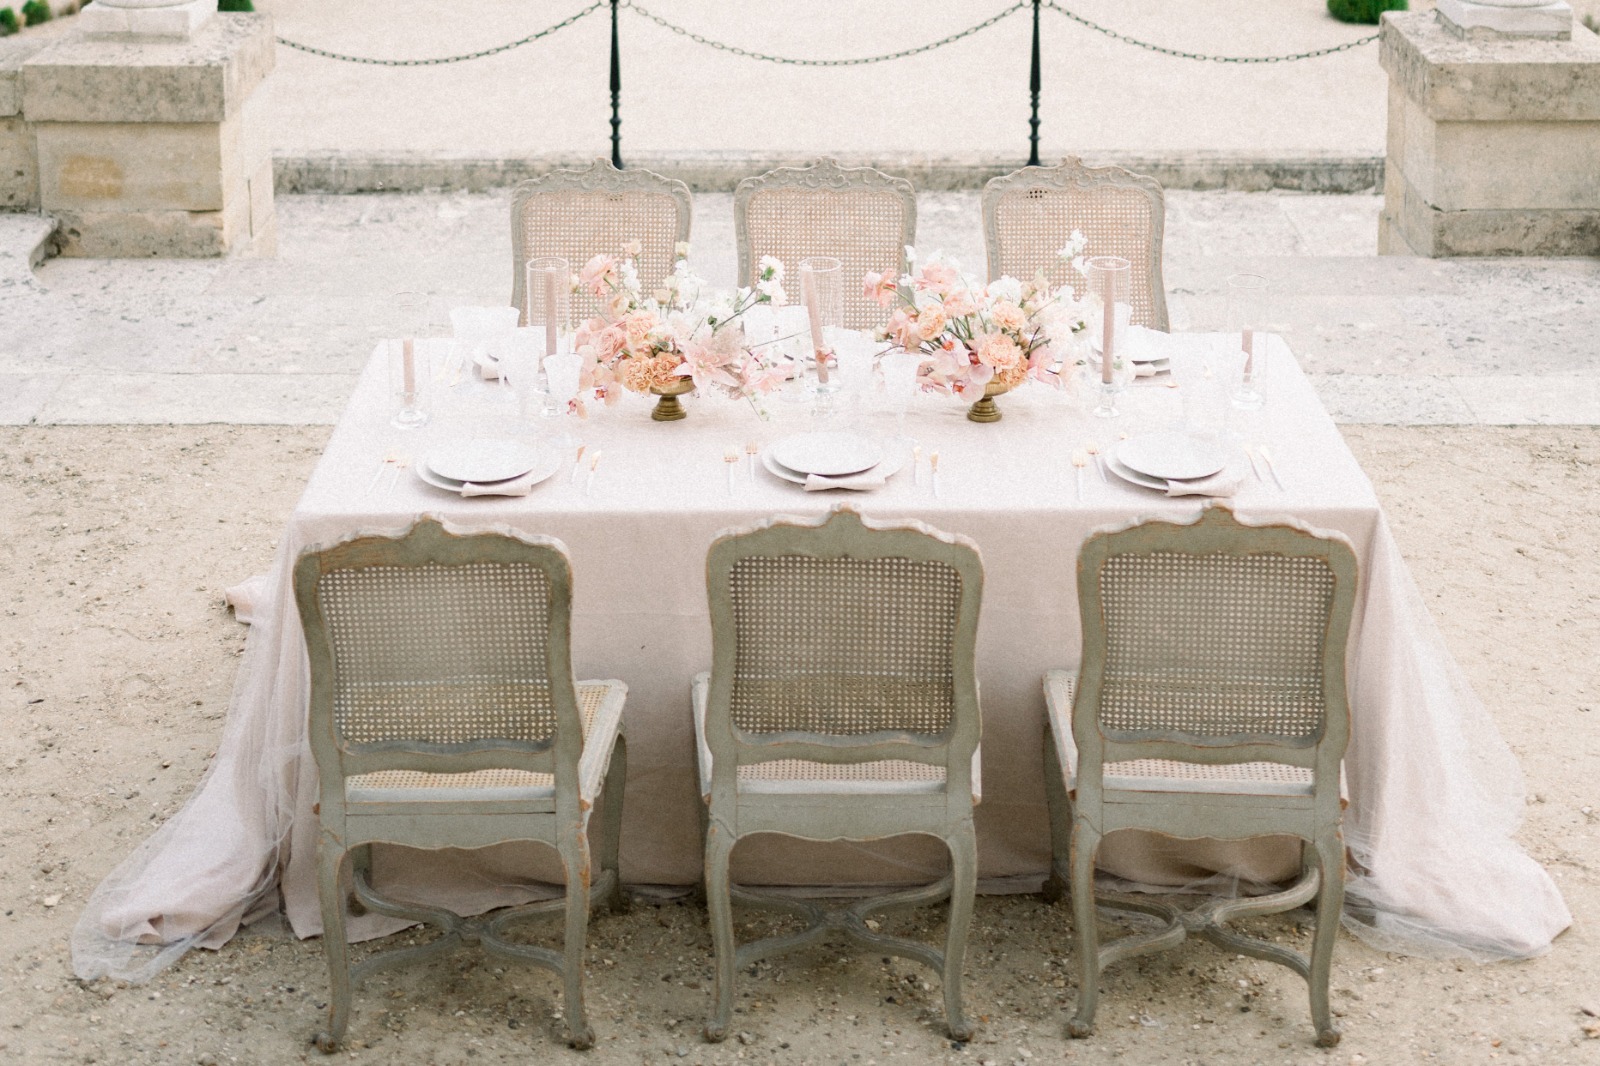 Wedding table at the chateau de Villette in Paris